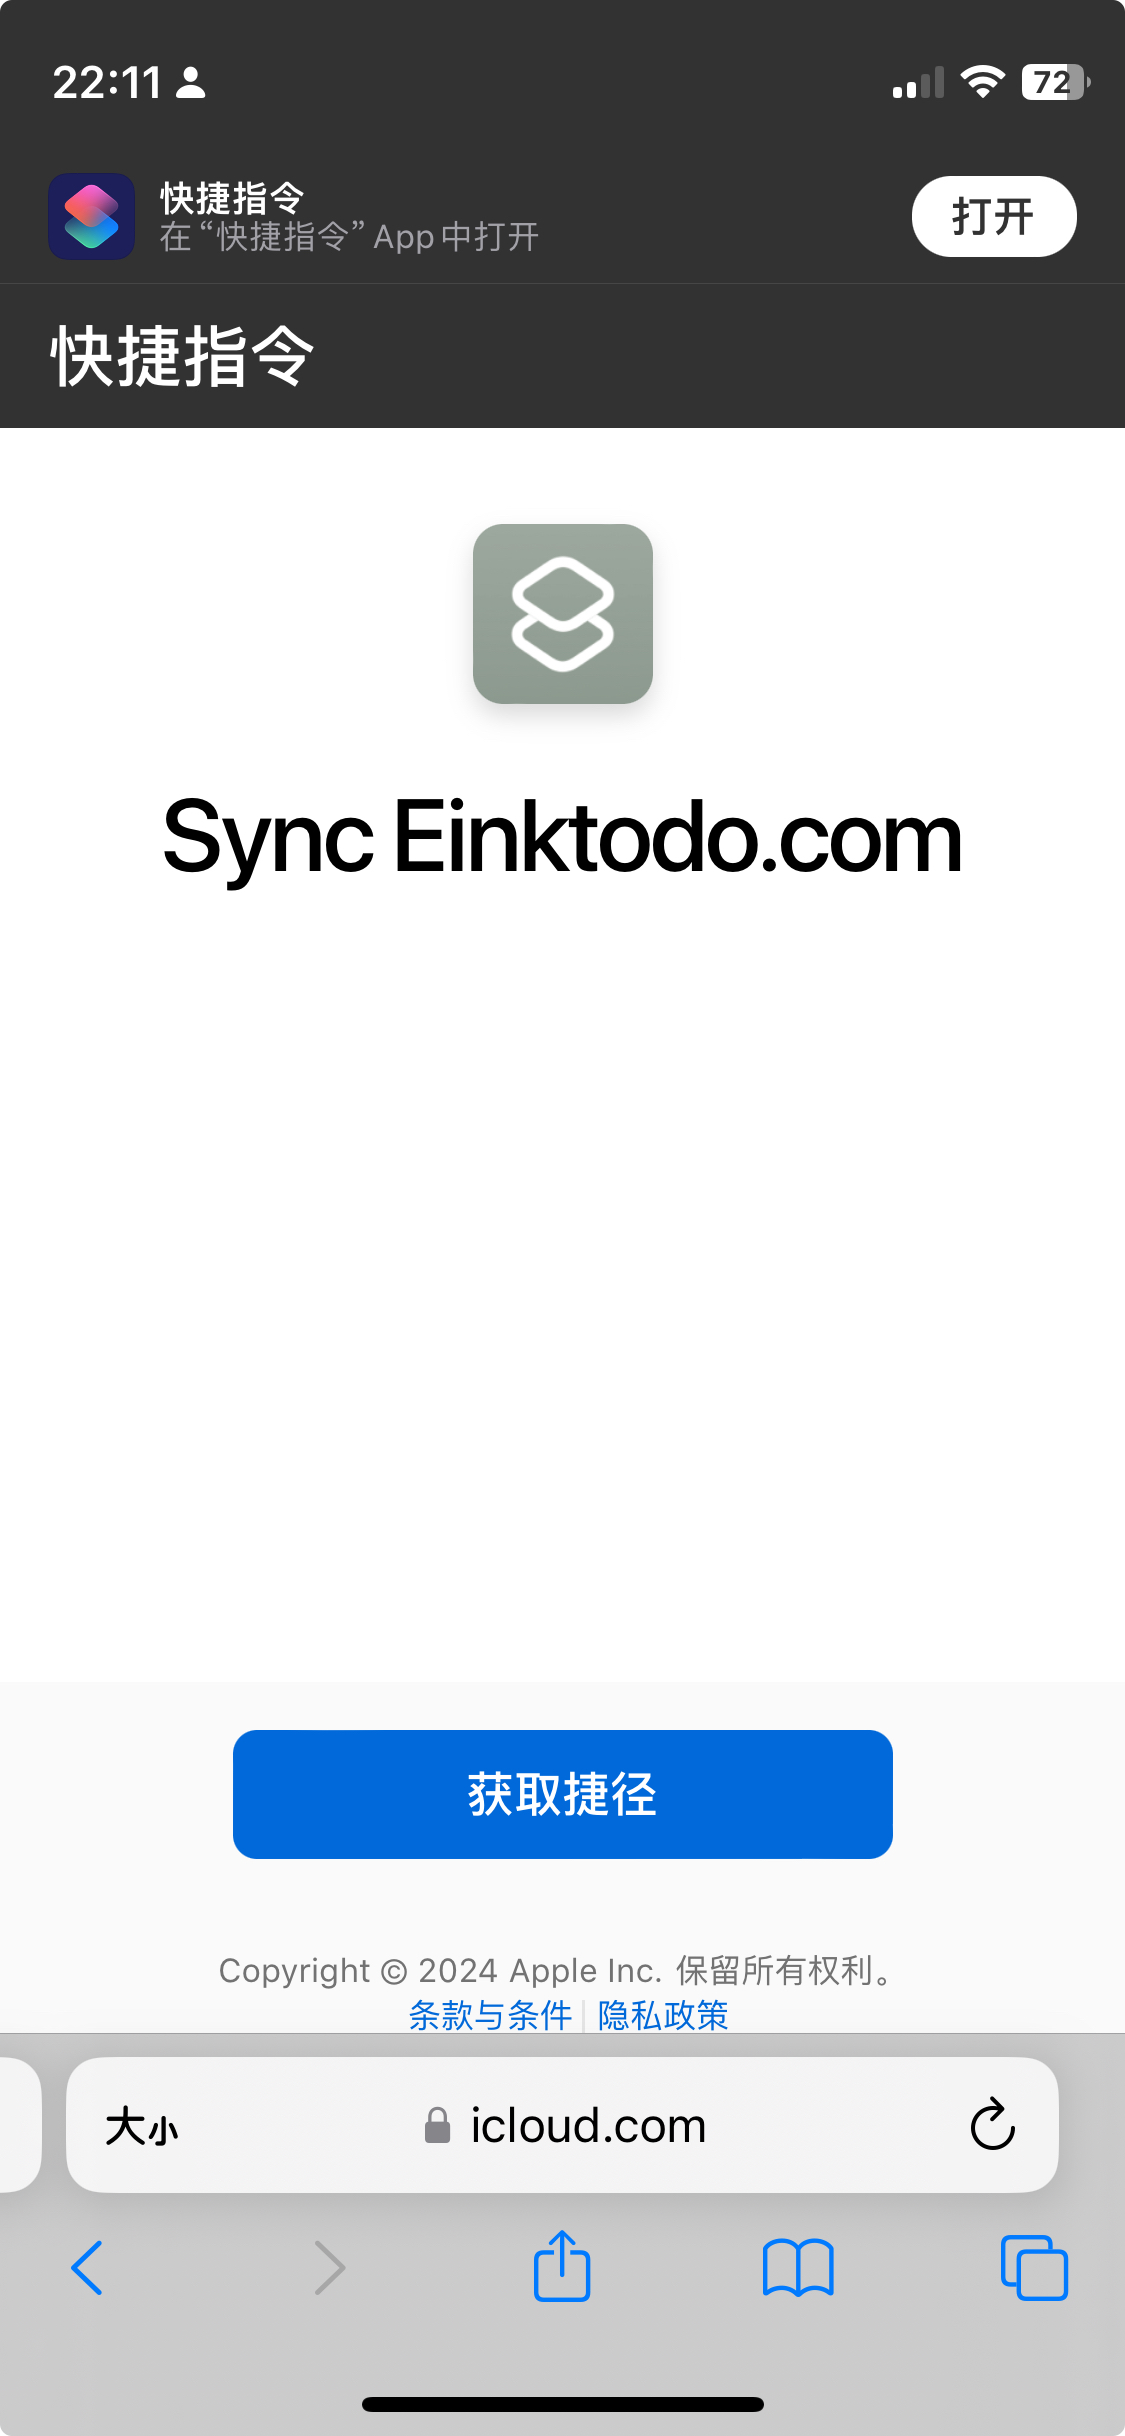 安装 Sync Einktodo.com 快捷指令